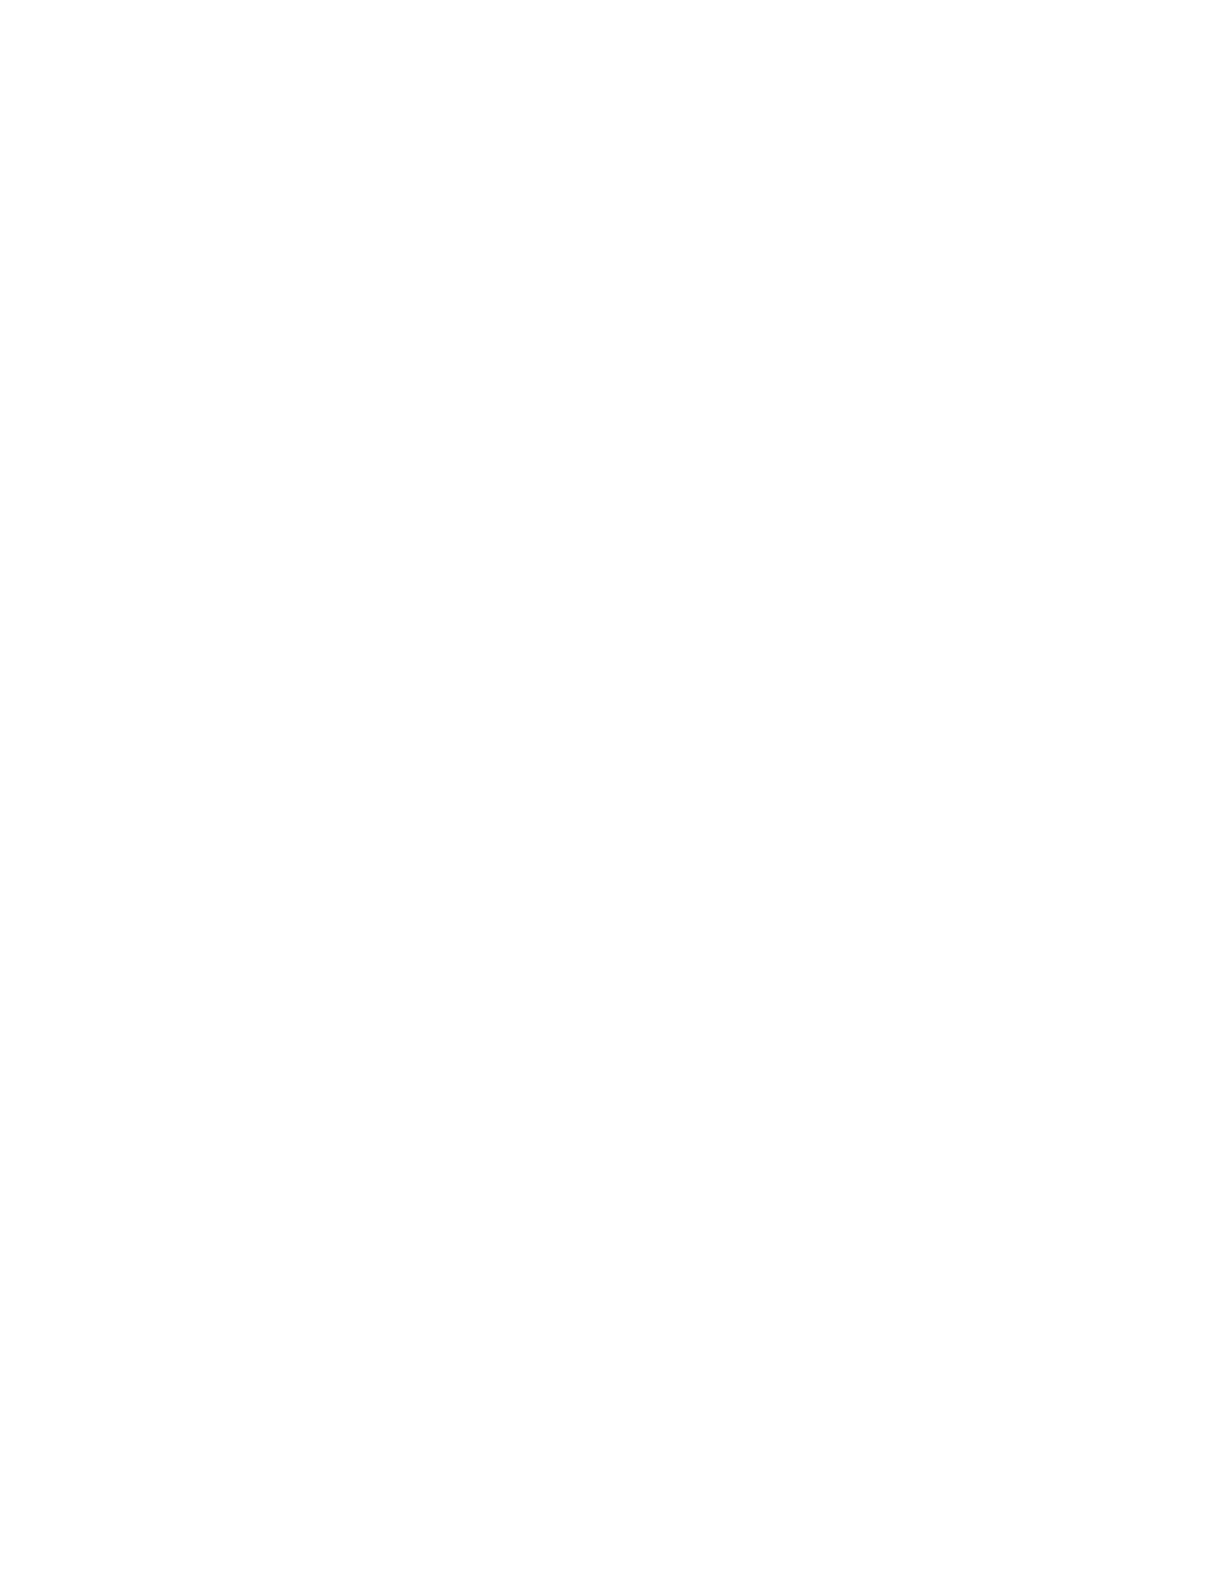 UmweltBank logo for dark backgrounds (transparent PNG)